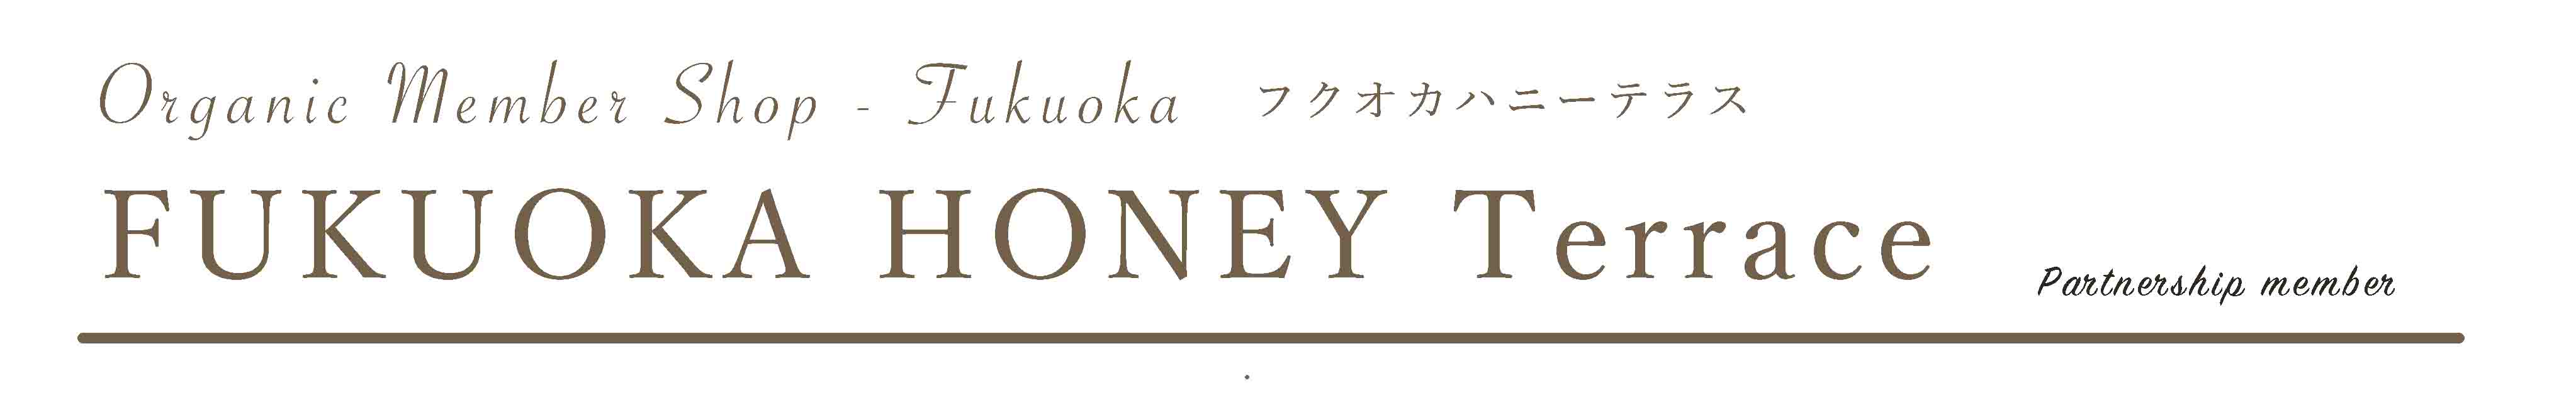 FUKUOKA HONEY Terrace